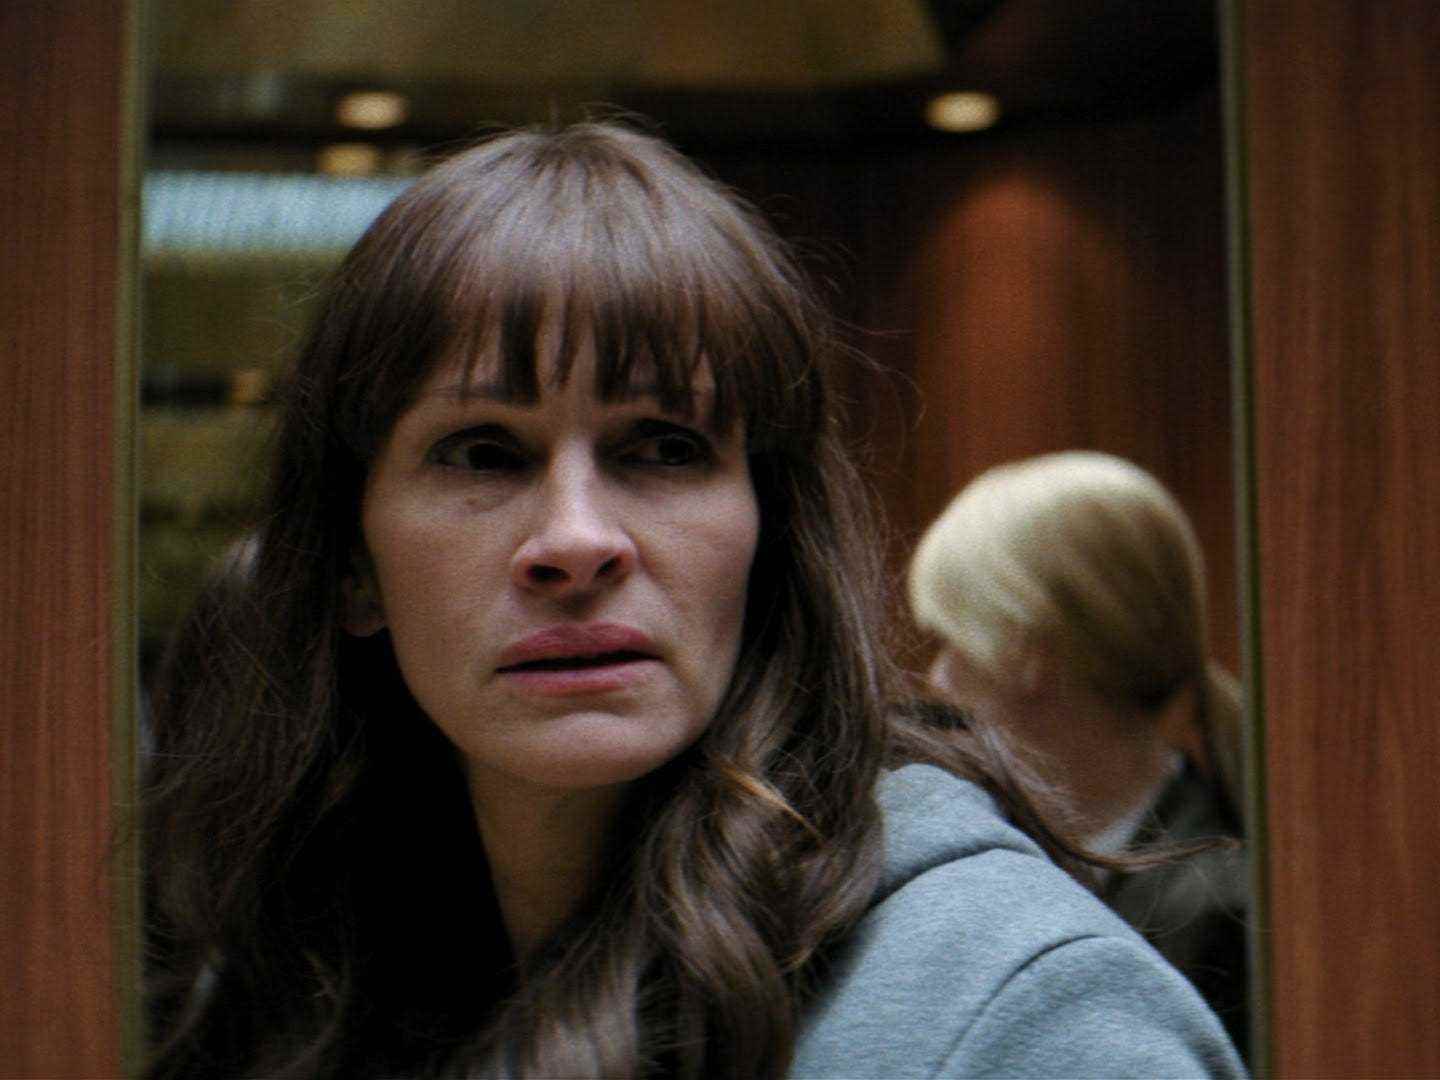 Jessica sieht in diesem Standbild aus dem Film „Secret in Their Eyes“ aus dem Jahr 2015 jemanden aus dem Off an.